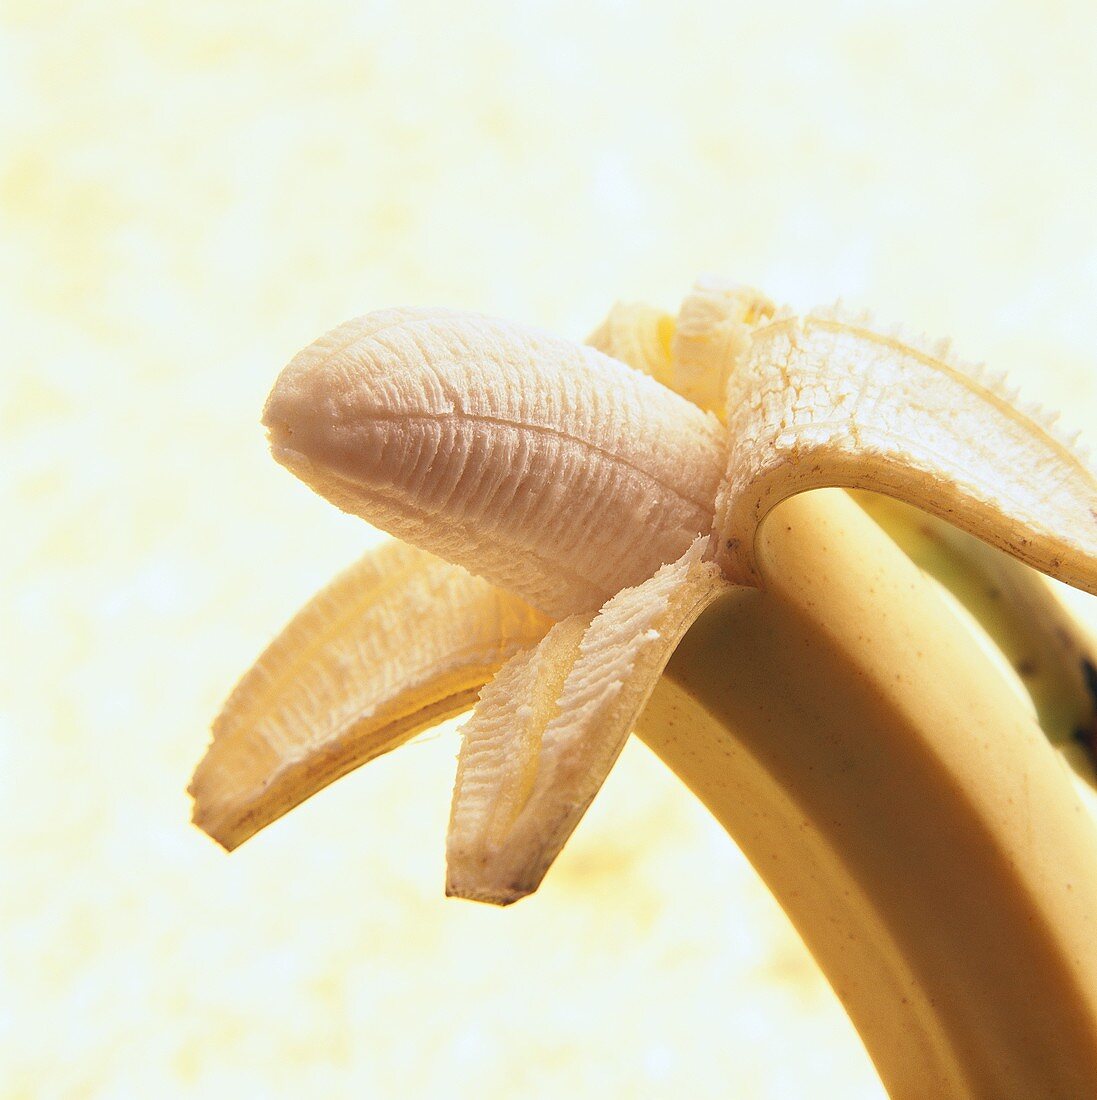 One Partially Peeled Banana